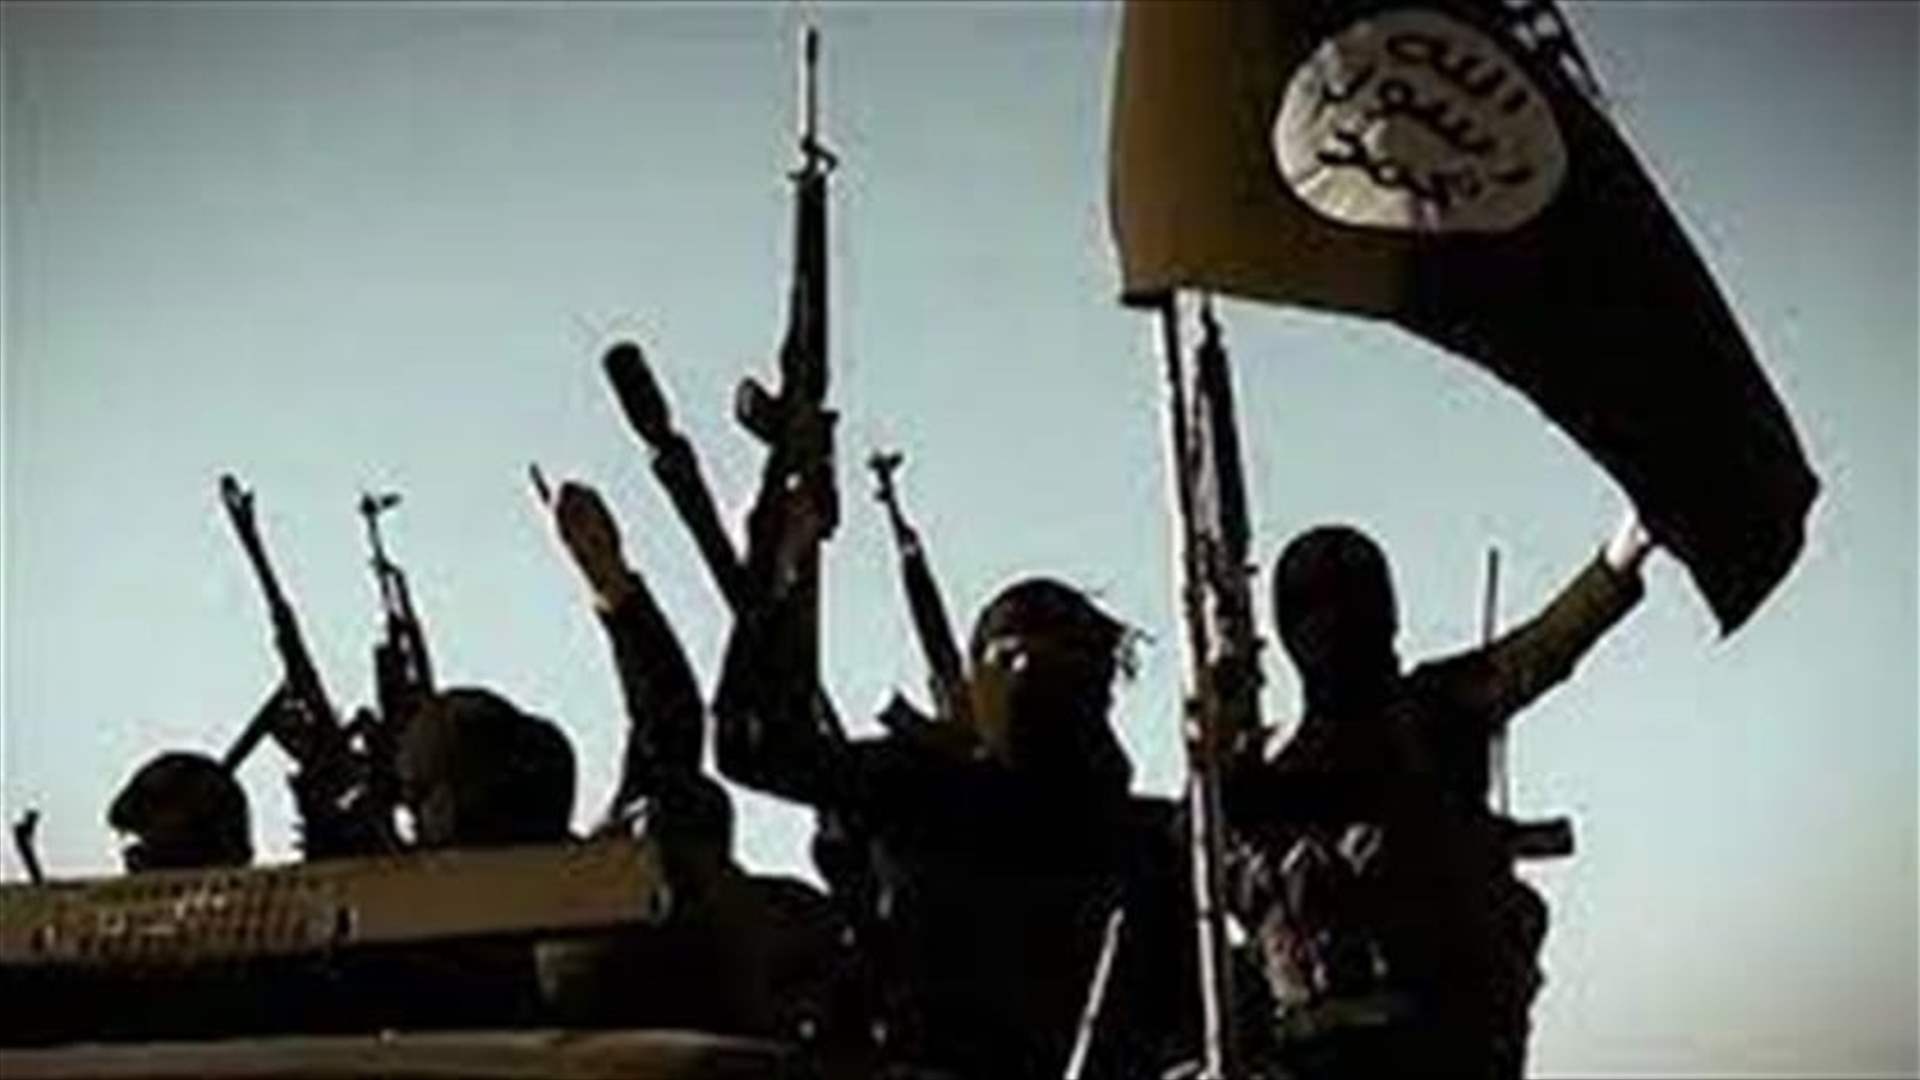 تنظيم الدولة الإسلامية يعلن مسؤوليته عن هجوم أودى بحياة جندي عراقي